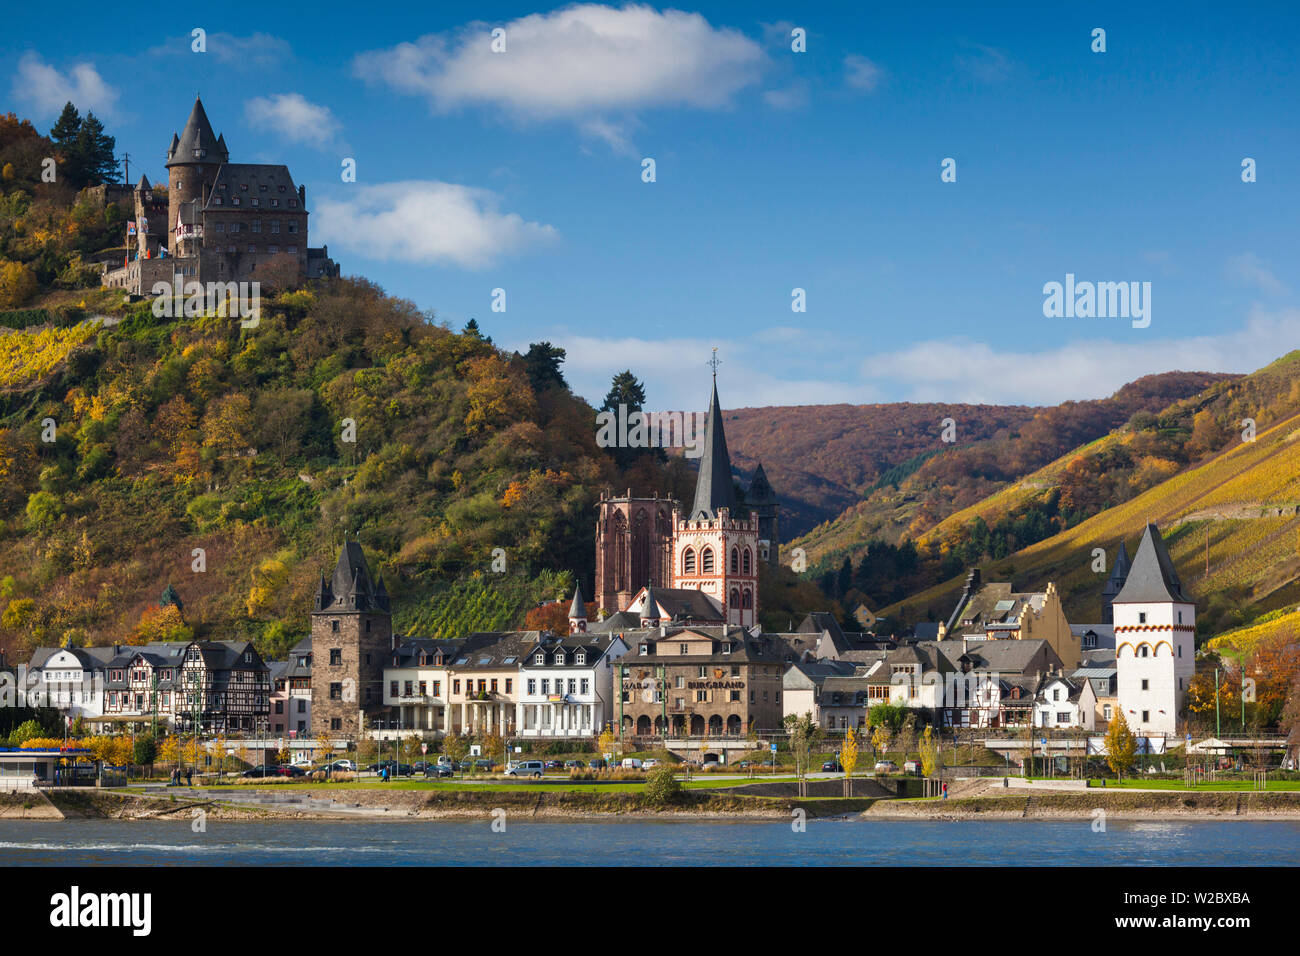 Germany, Rheinland-Pfalz, Bacharach, town view, autumn Stock Photo